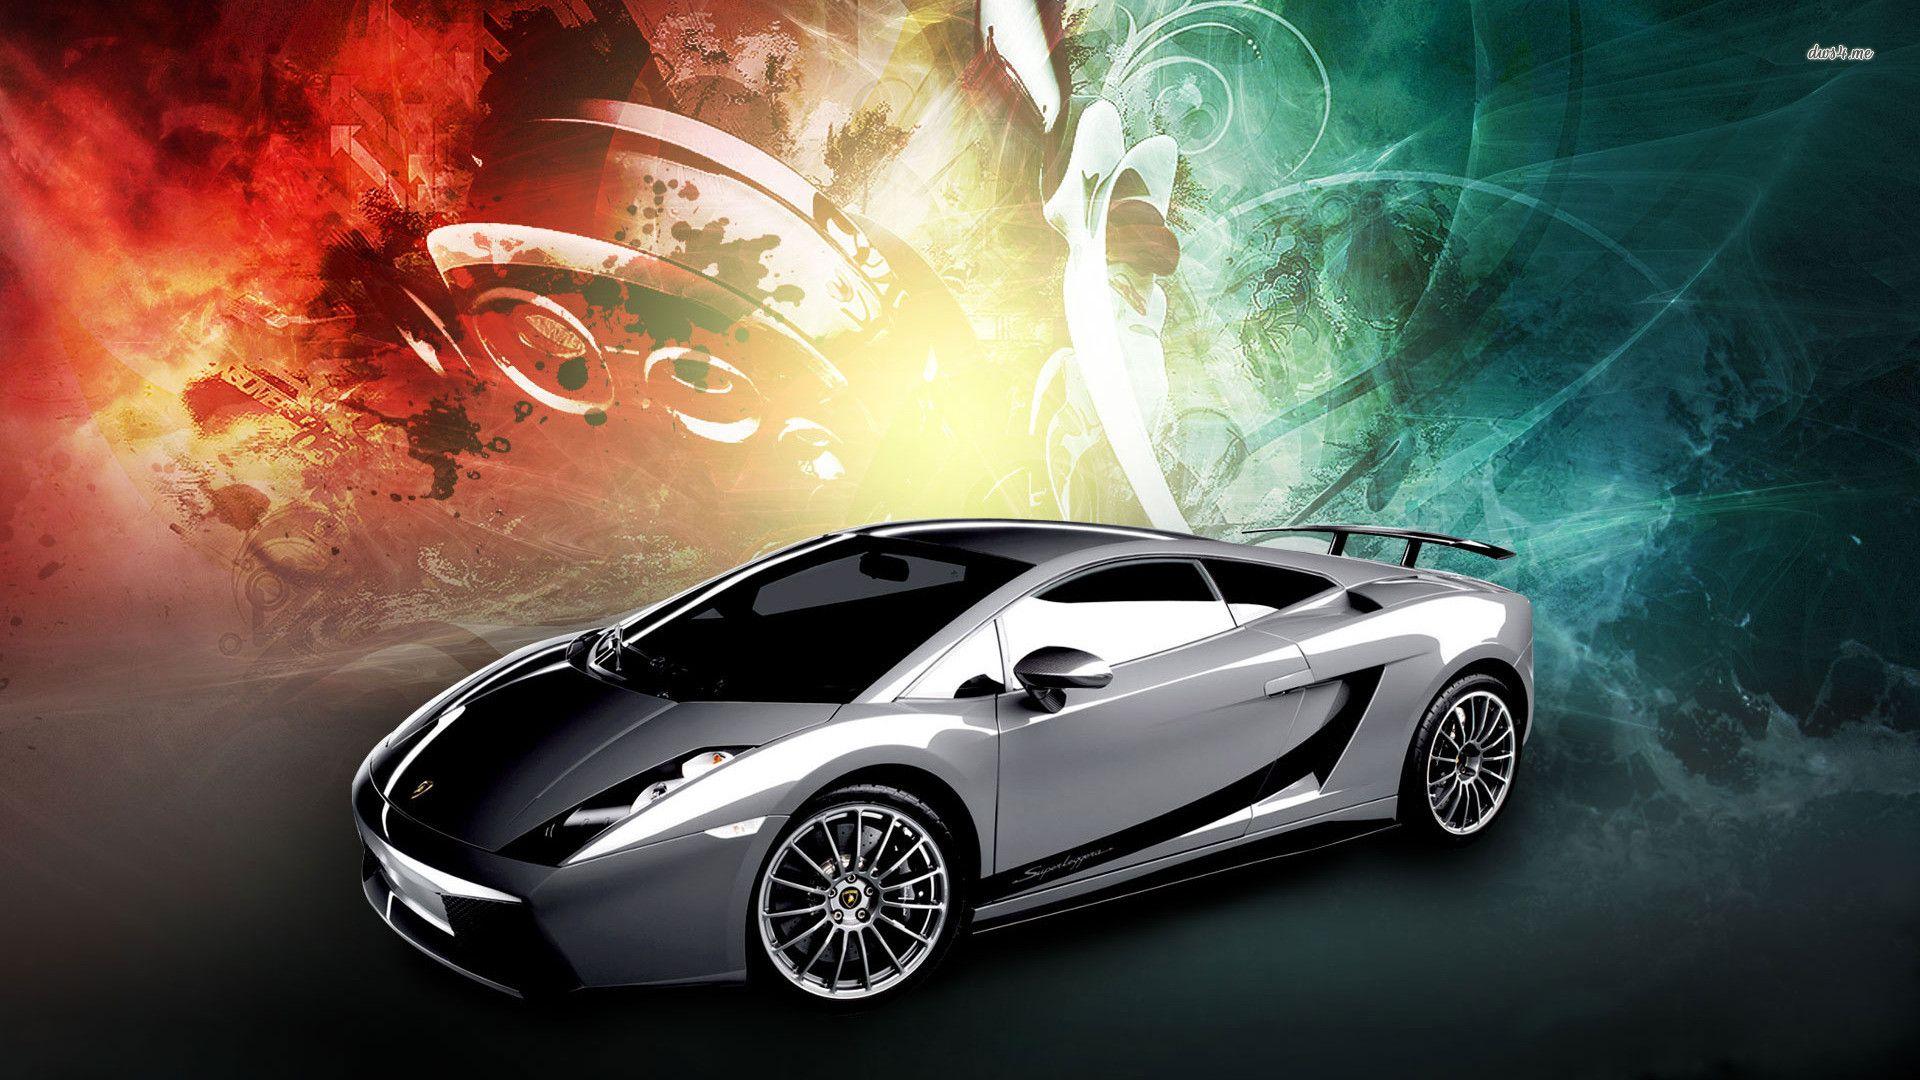 Lamborghini, aventador, black, car, carros, cool, dark, headlights, lambo,  lamborgini, HD phone wallpaper | Peakpx